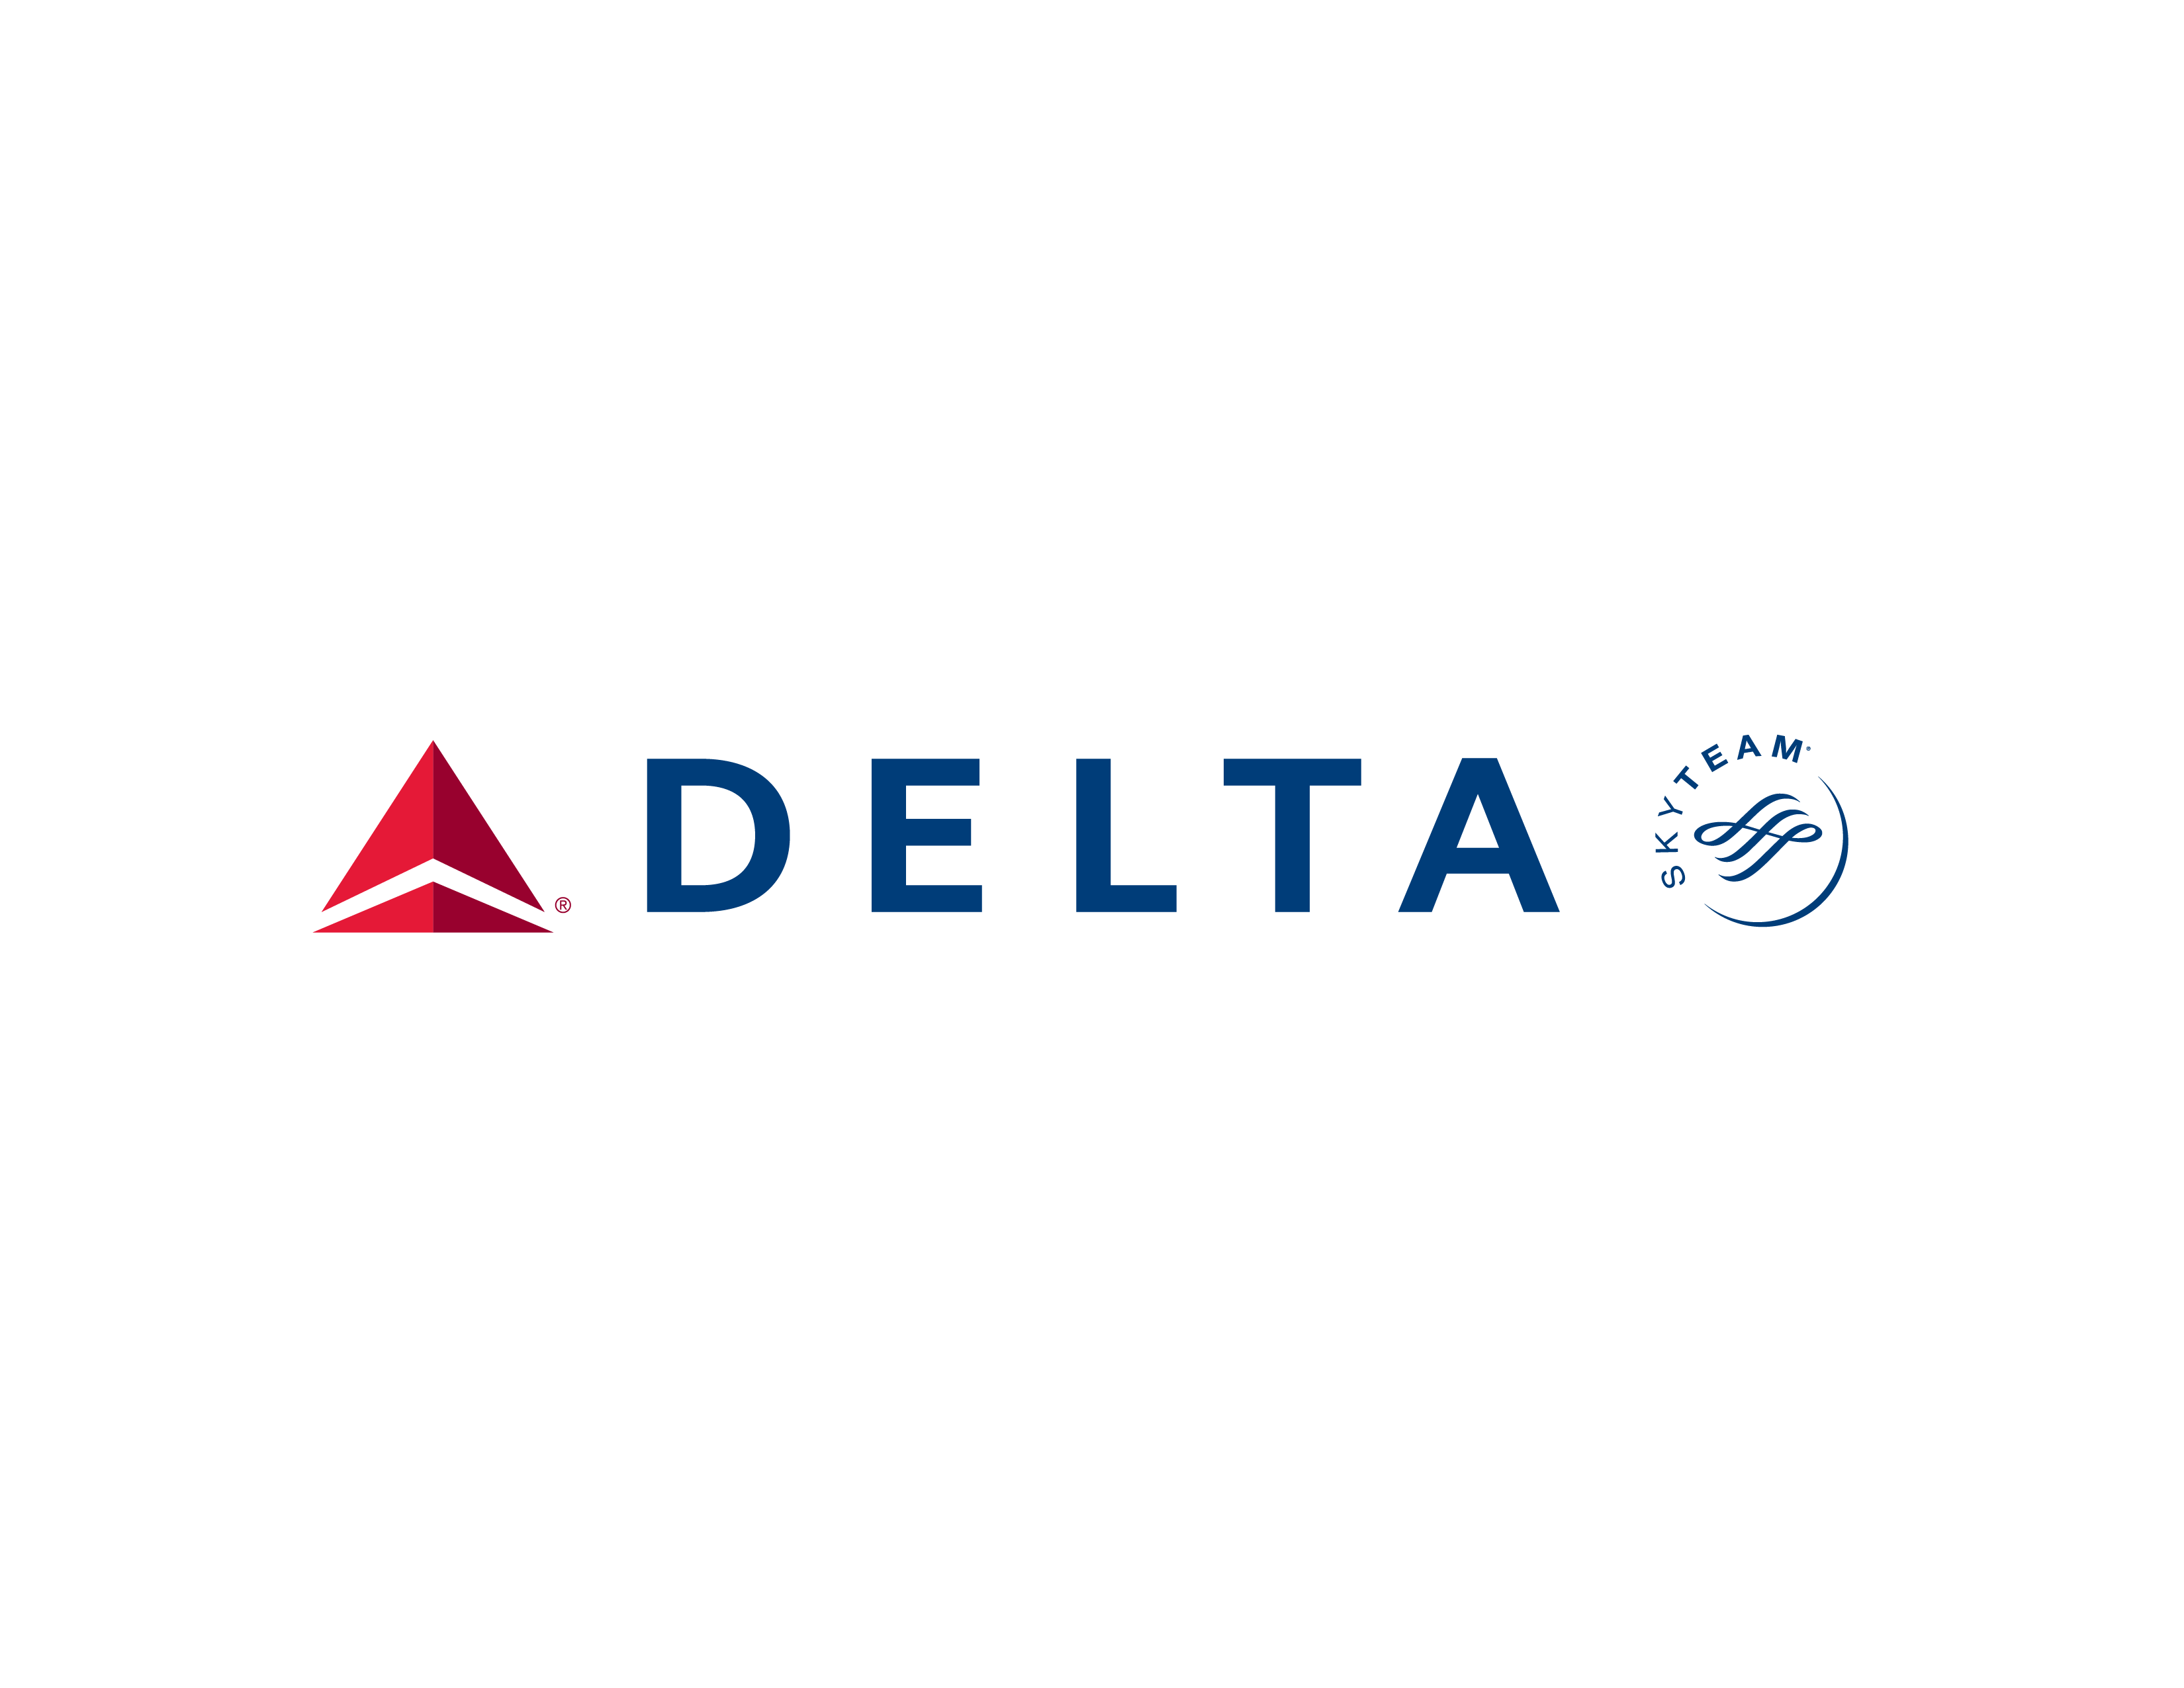 Delta Air Lines